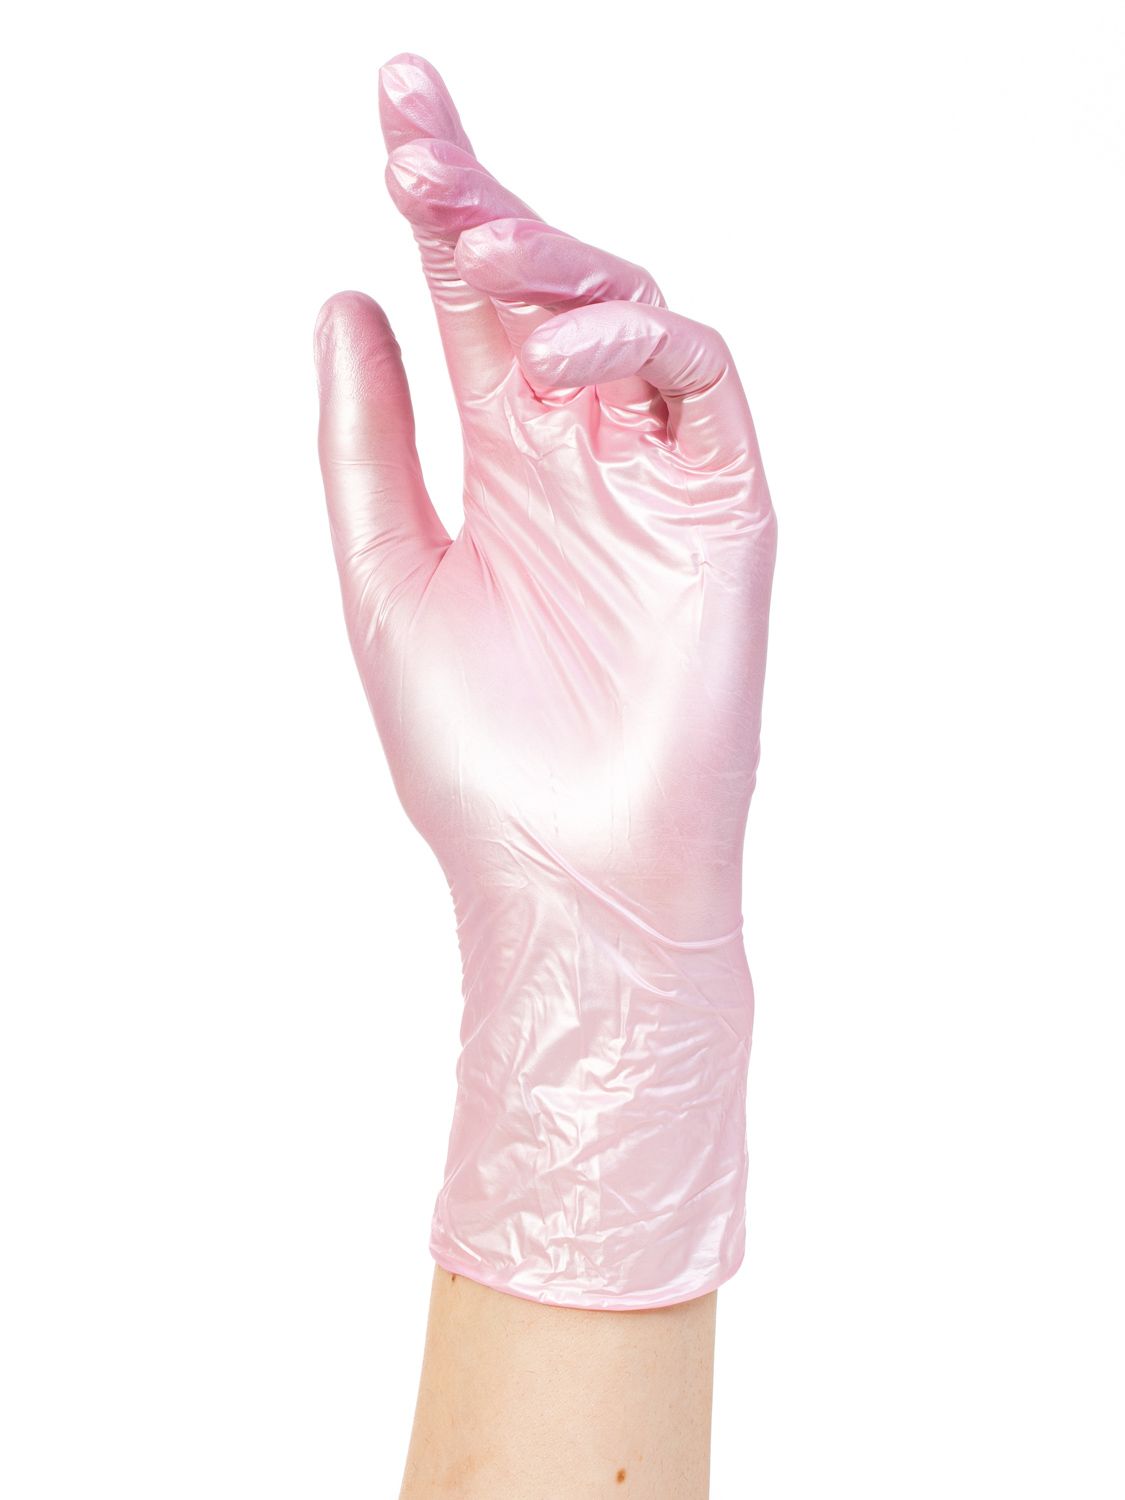 Перчатки нитриловые ADELE  розовый перламутр M 50пар